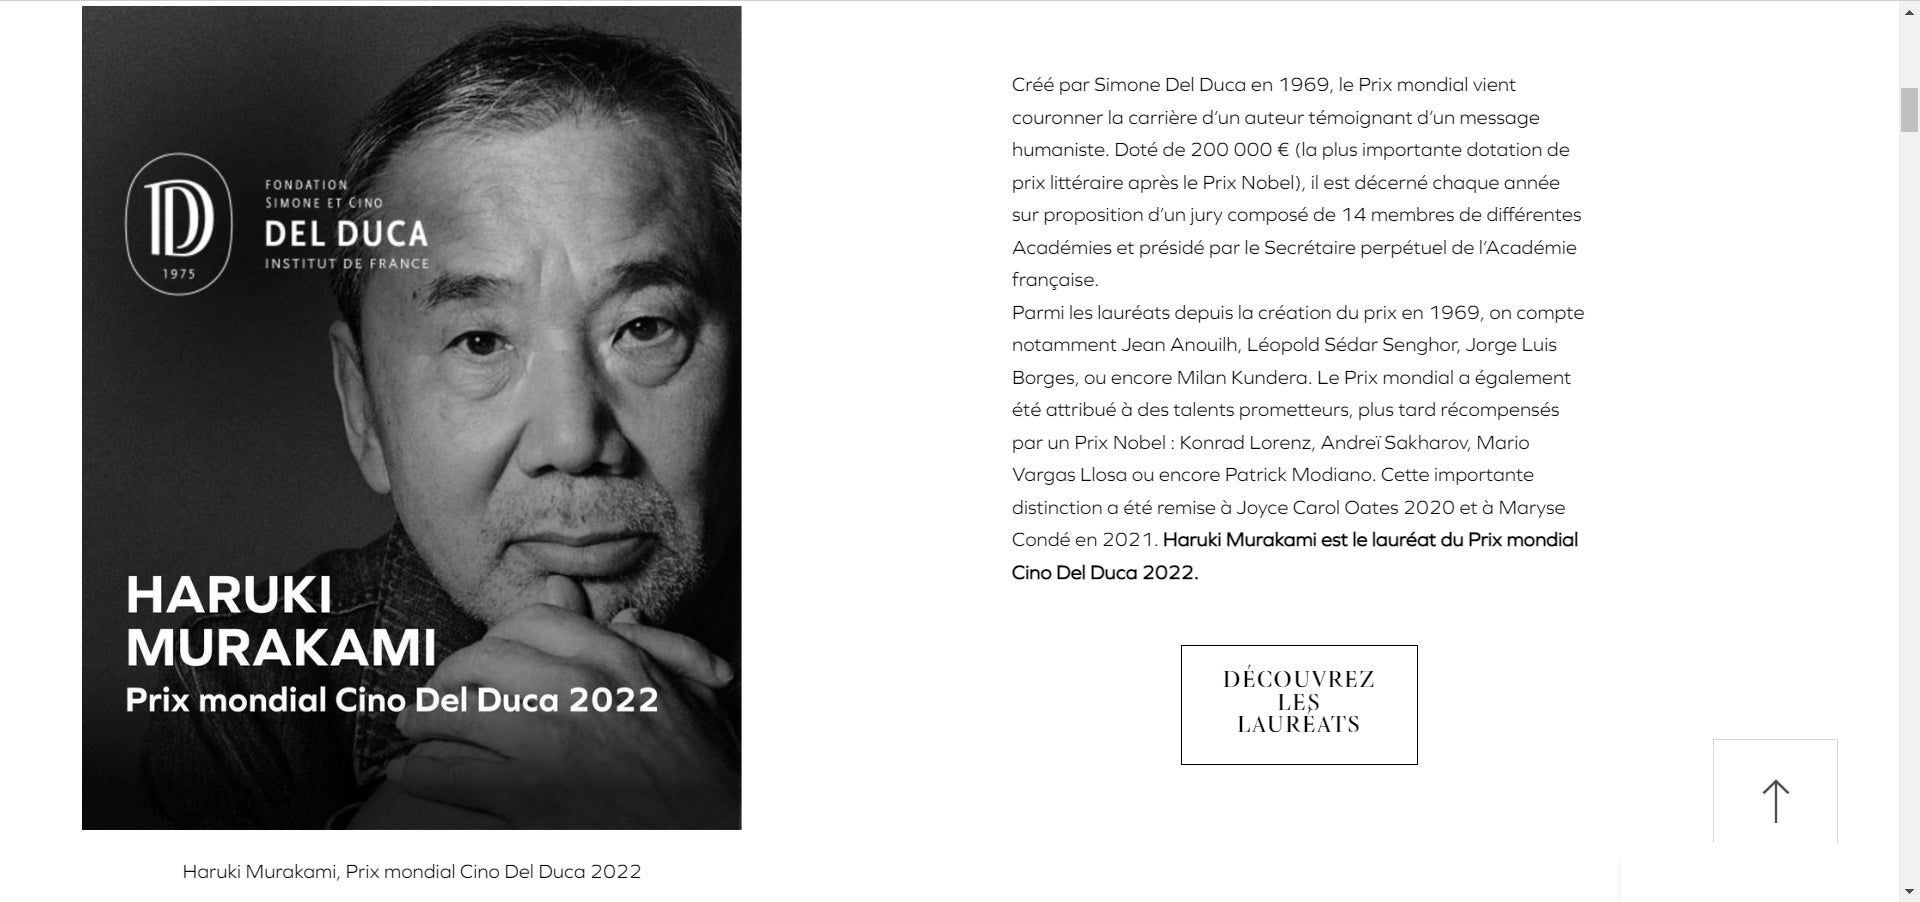 Murakami Haruki recibe prestigioso Premio Cino Del Duca 2022